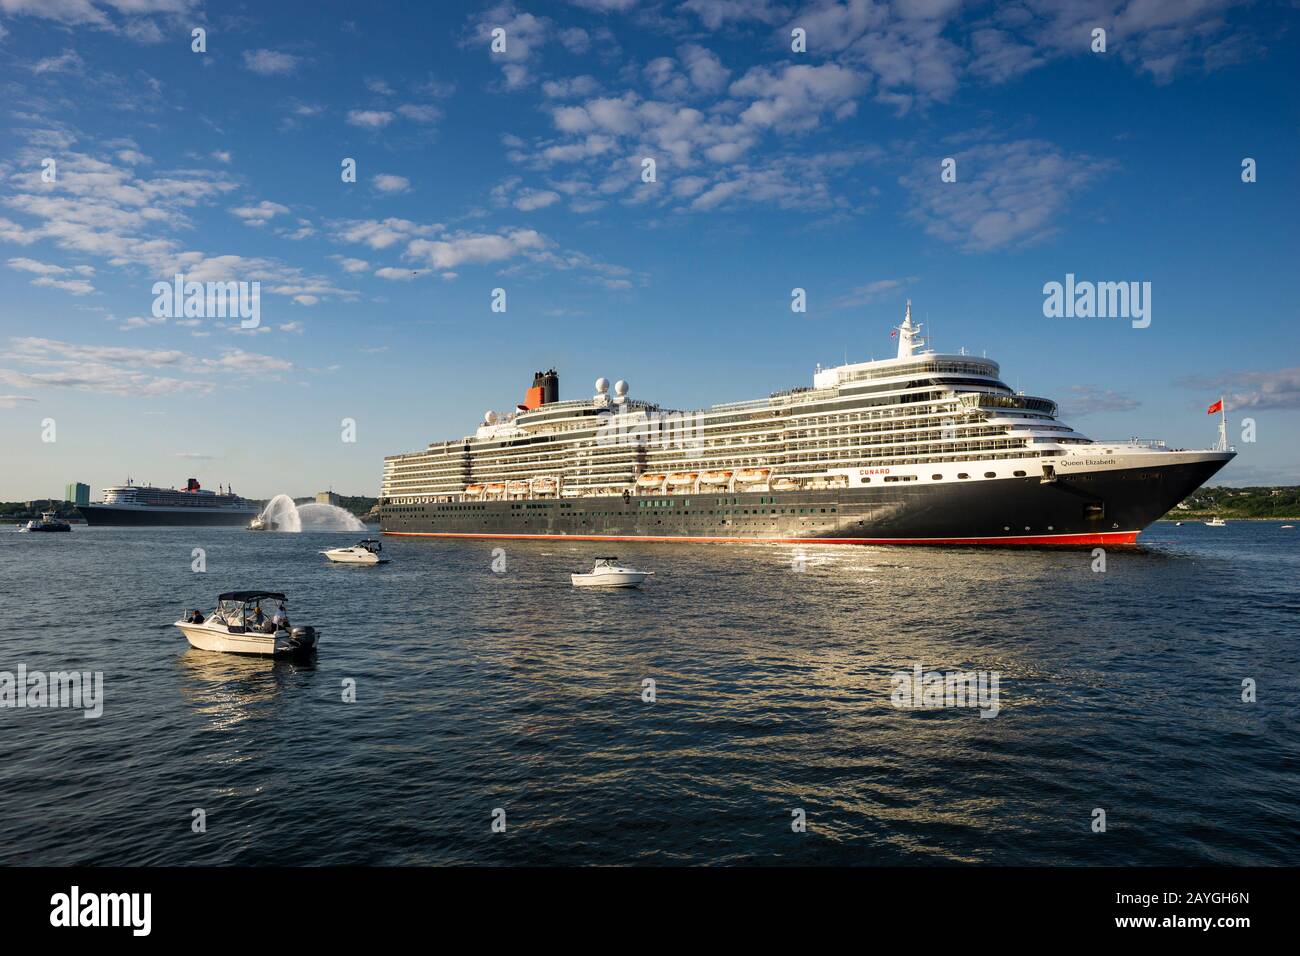 Alla sua partenza, la nave da crociera di Cunard, la regina Elisabetta, esegue un marinaio sul lungomare di Halifax, Nuova Scozia, Canada. Foto Stock